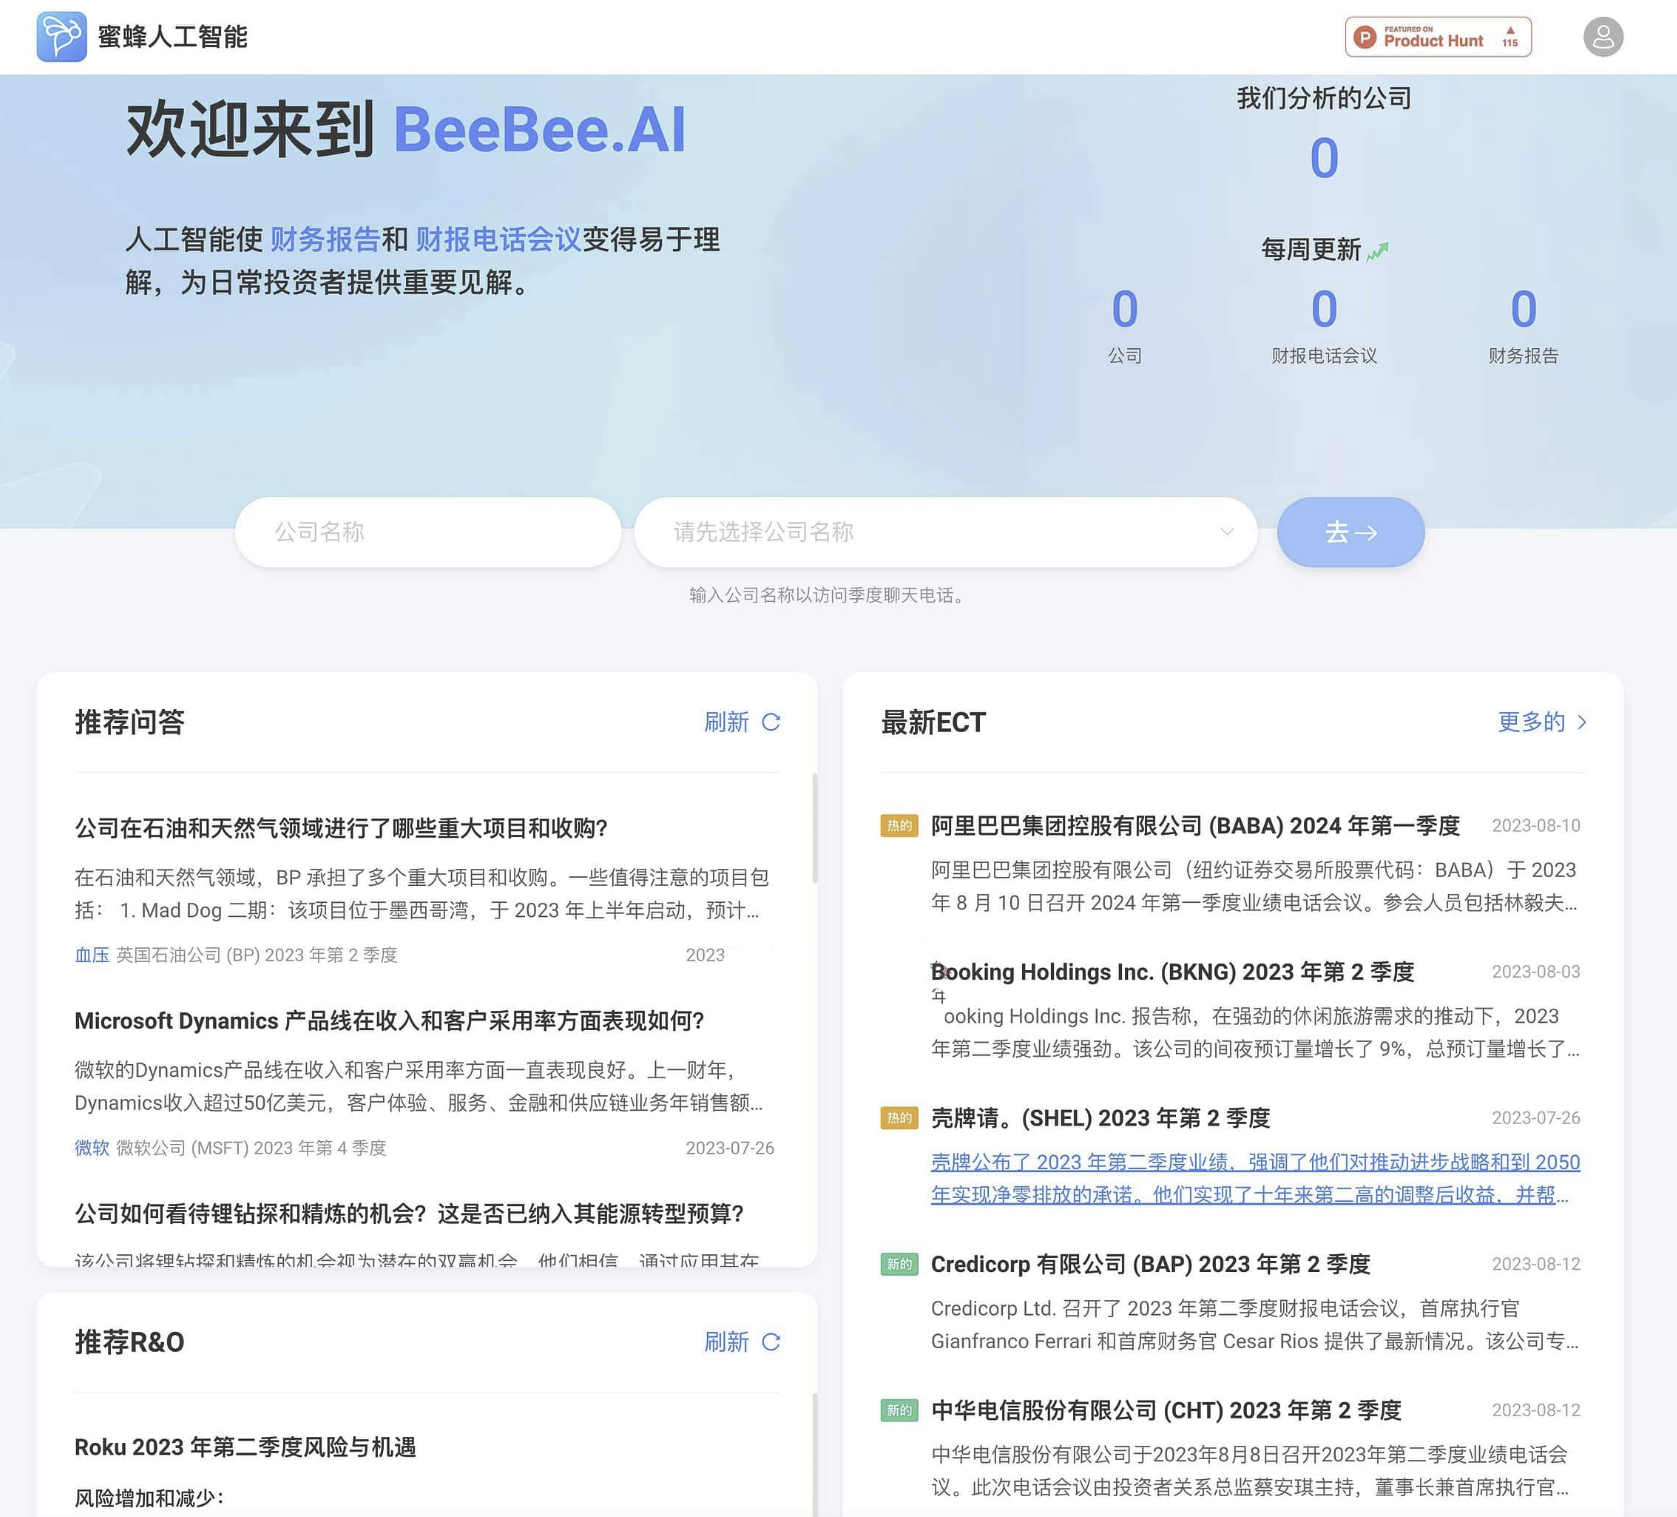 BeeBee Ai-AI深度分析公司财报会议记录 为投资者提供简明金融洞察-学点AIweb3中心